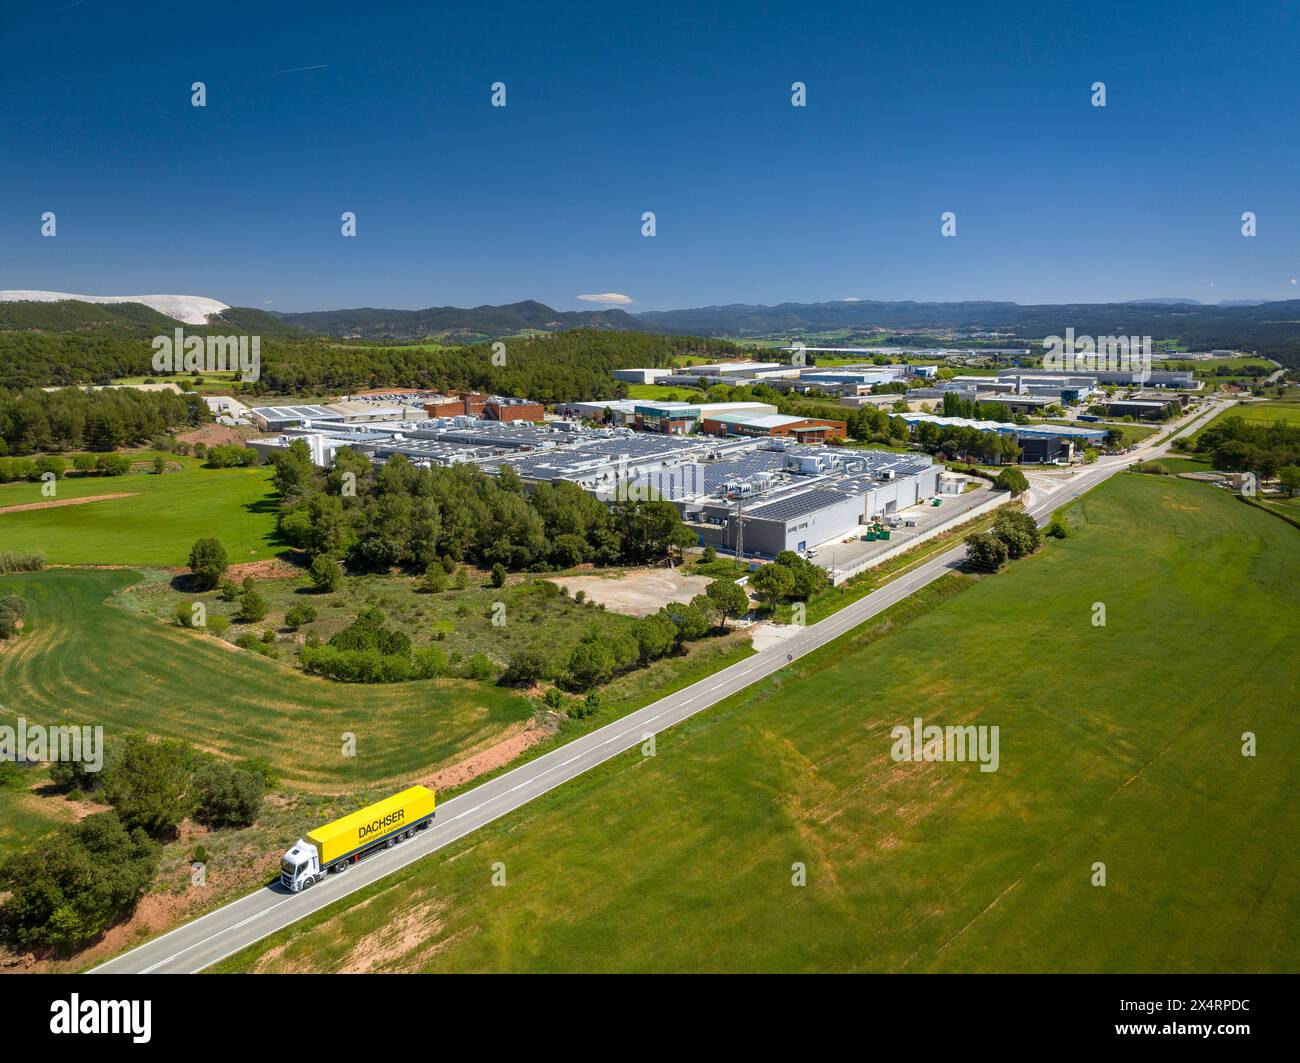 Vista aérea del polígono industrial del Pla de Santa Anna, entre Santpedor y Sant Fruitós de Bages (Barcelona, Cataluña, España) Stock Photo